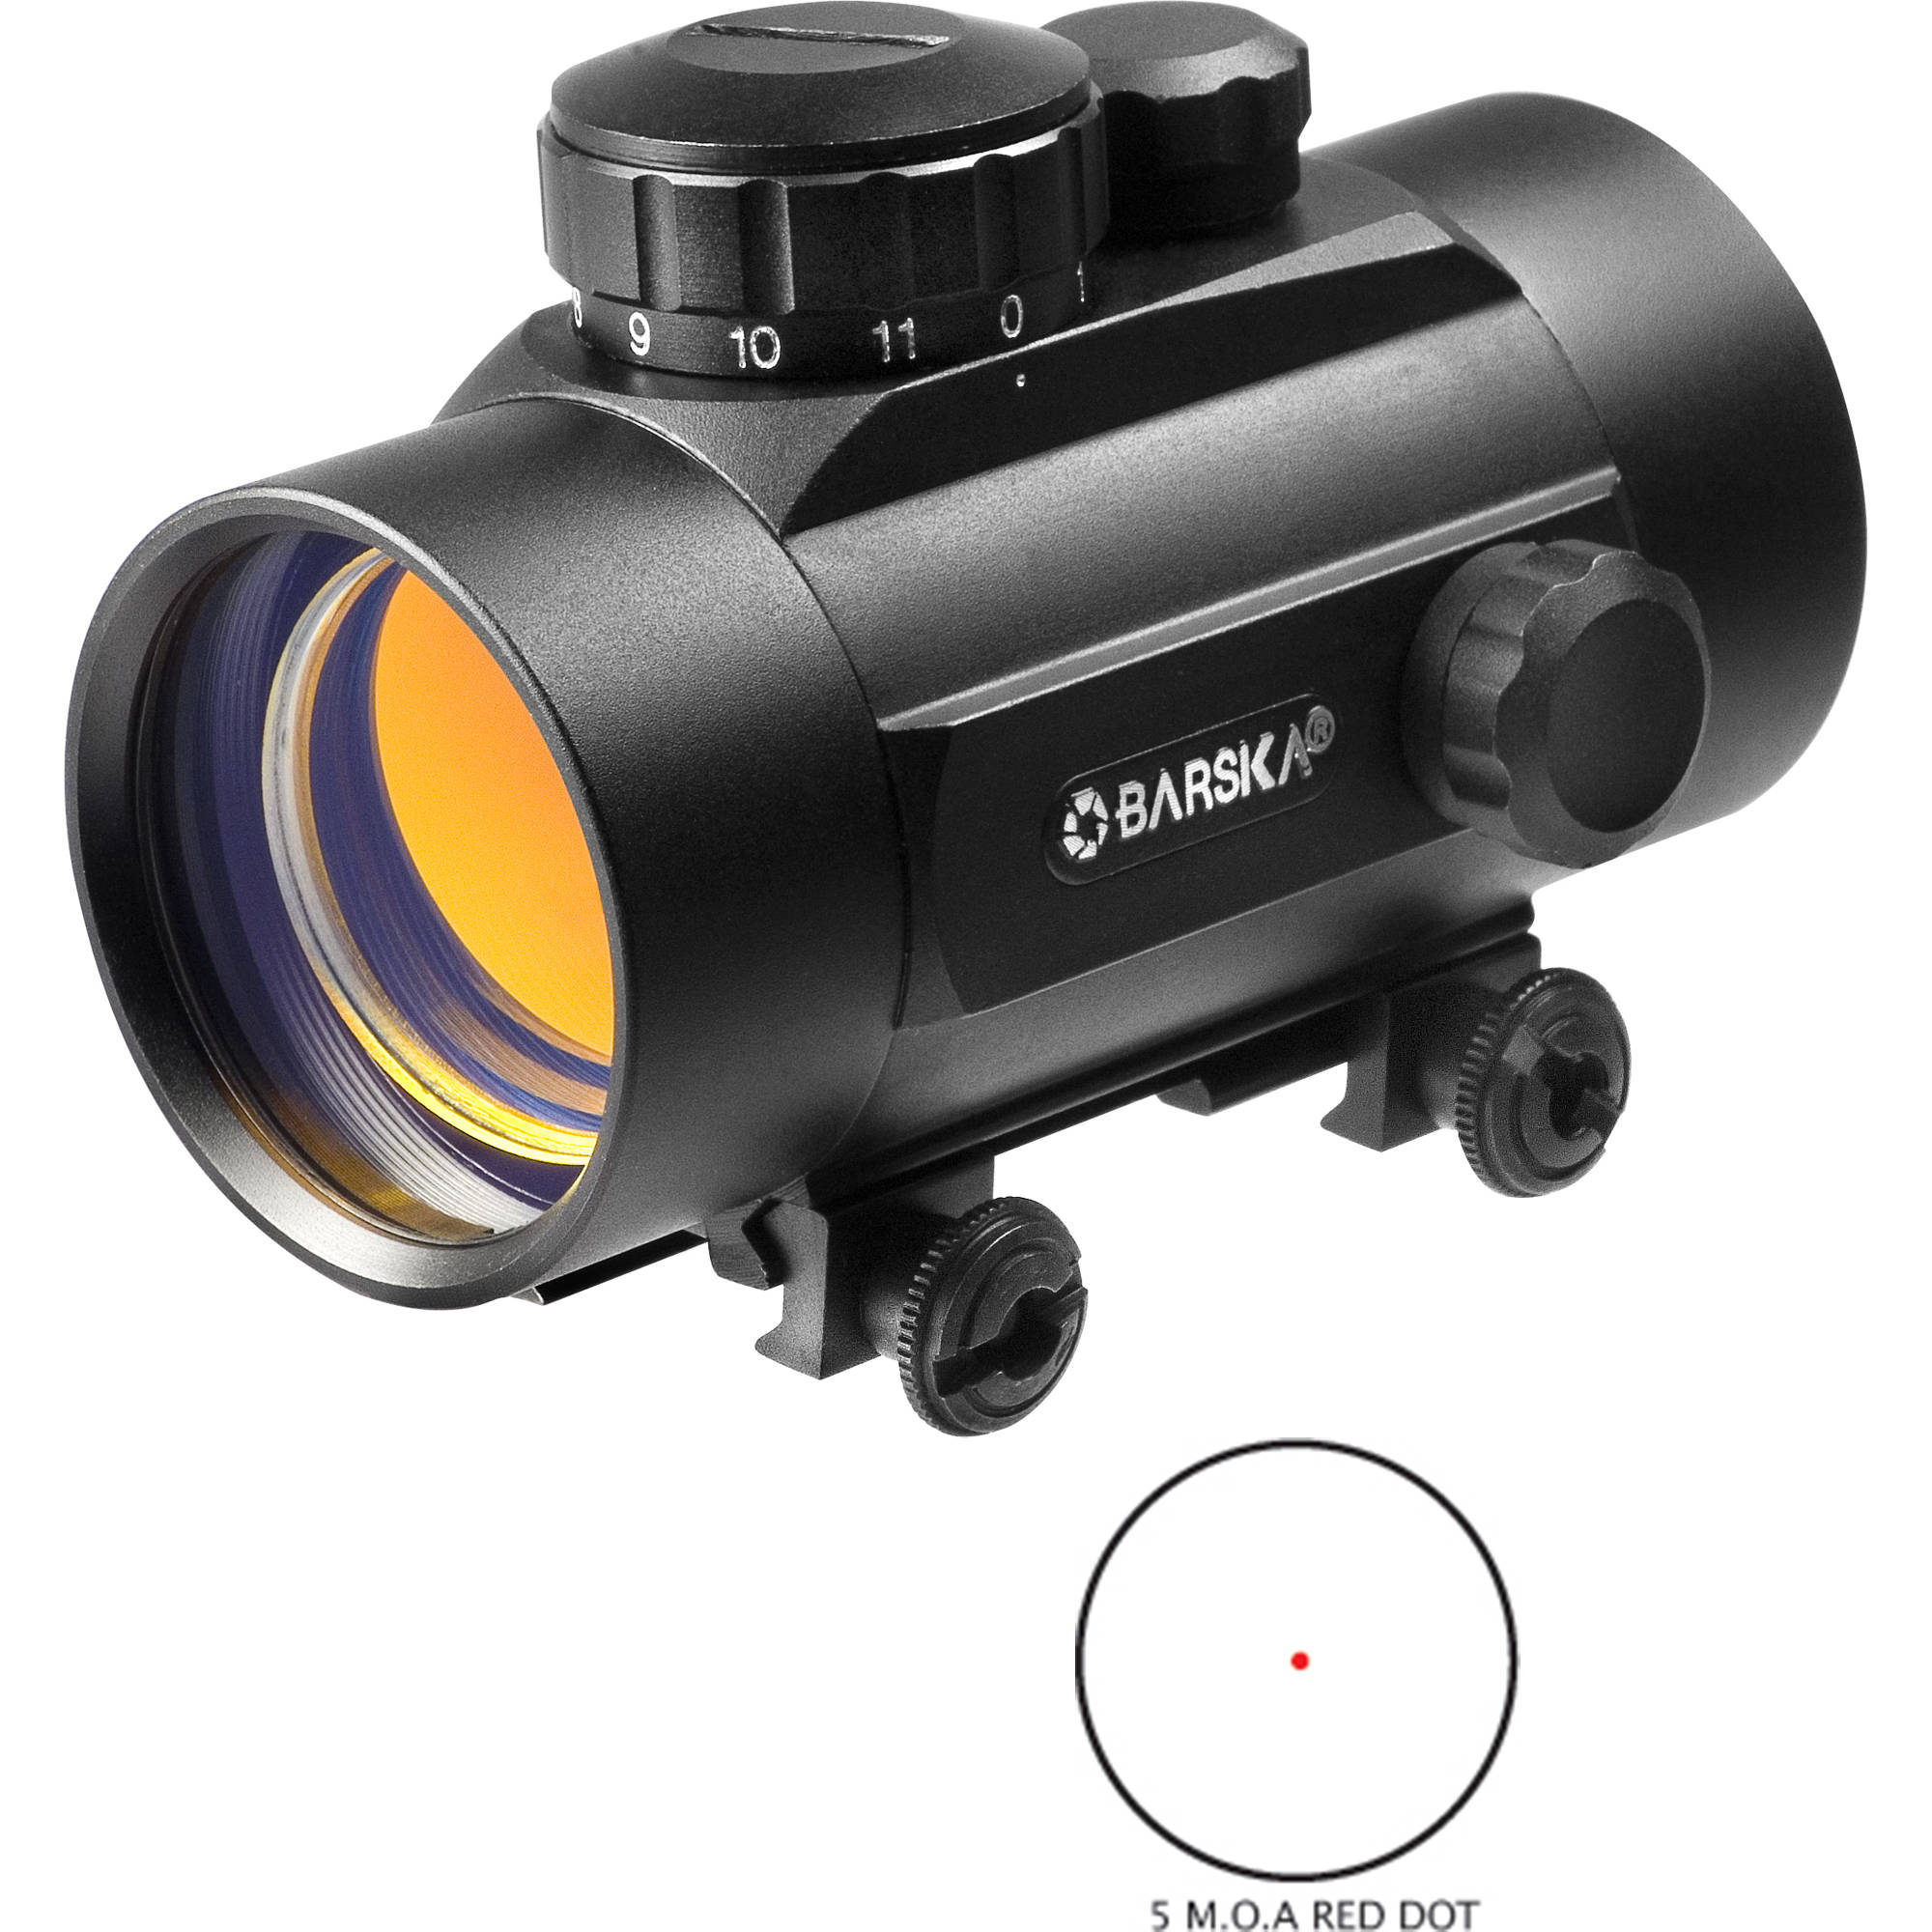 Barska 42mm Red Dot Sight Ac10330 B H Photo Video